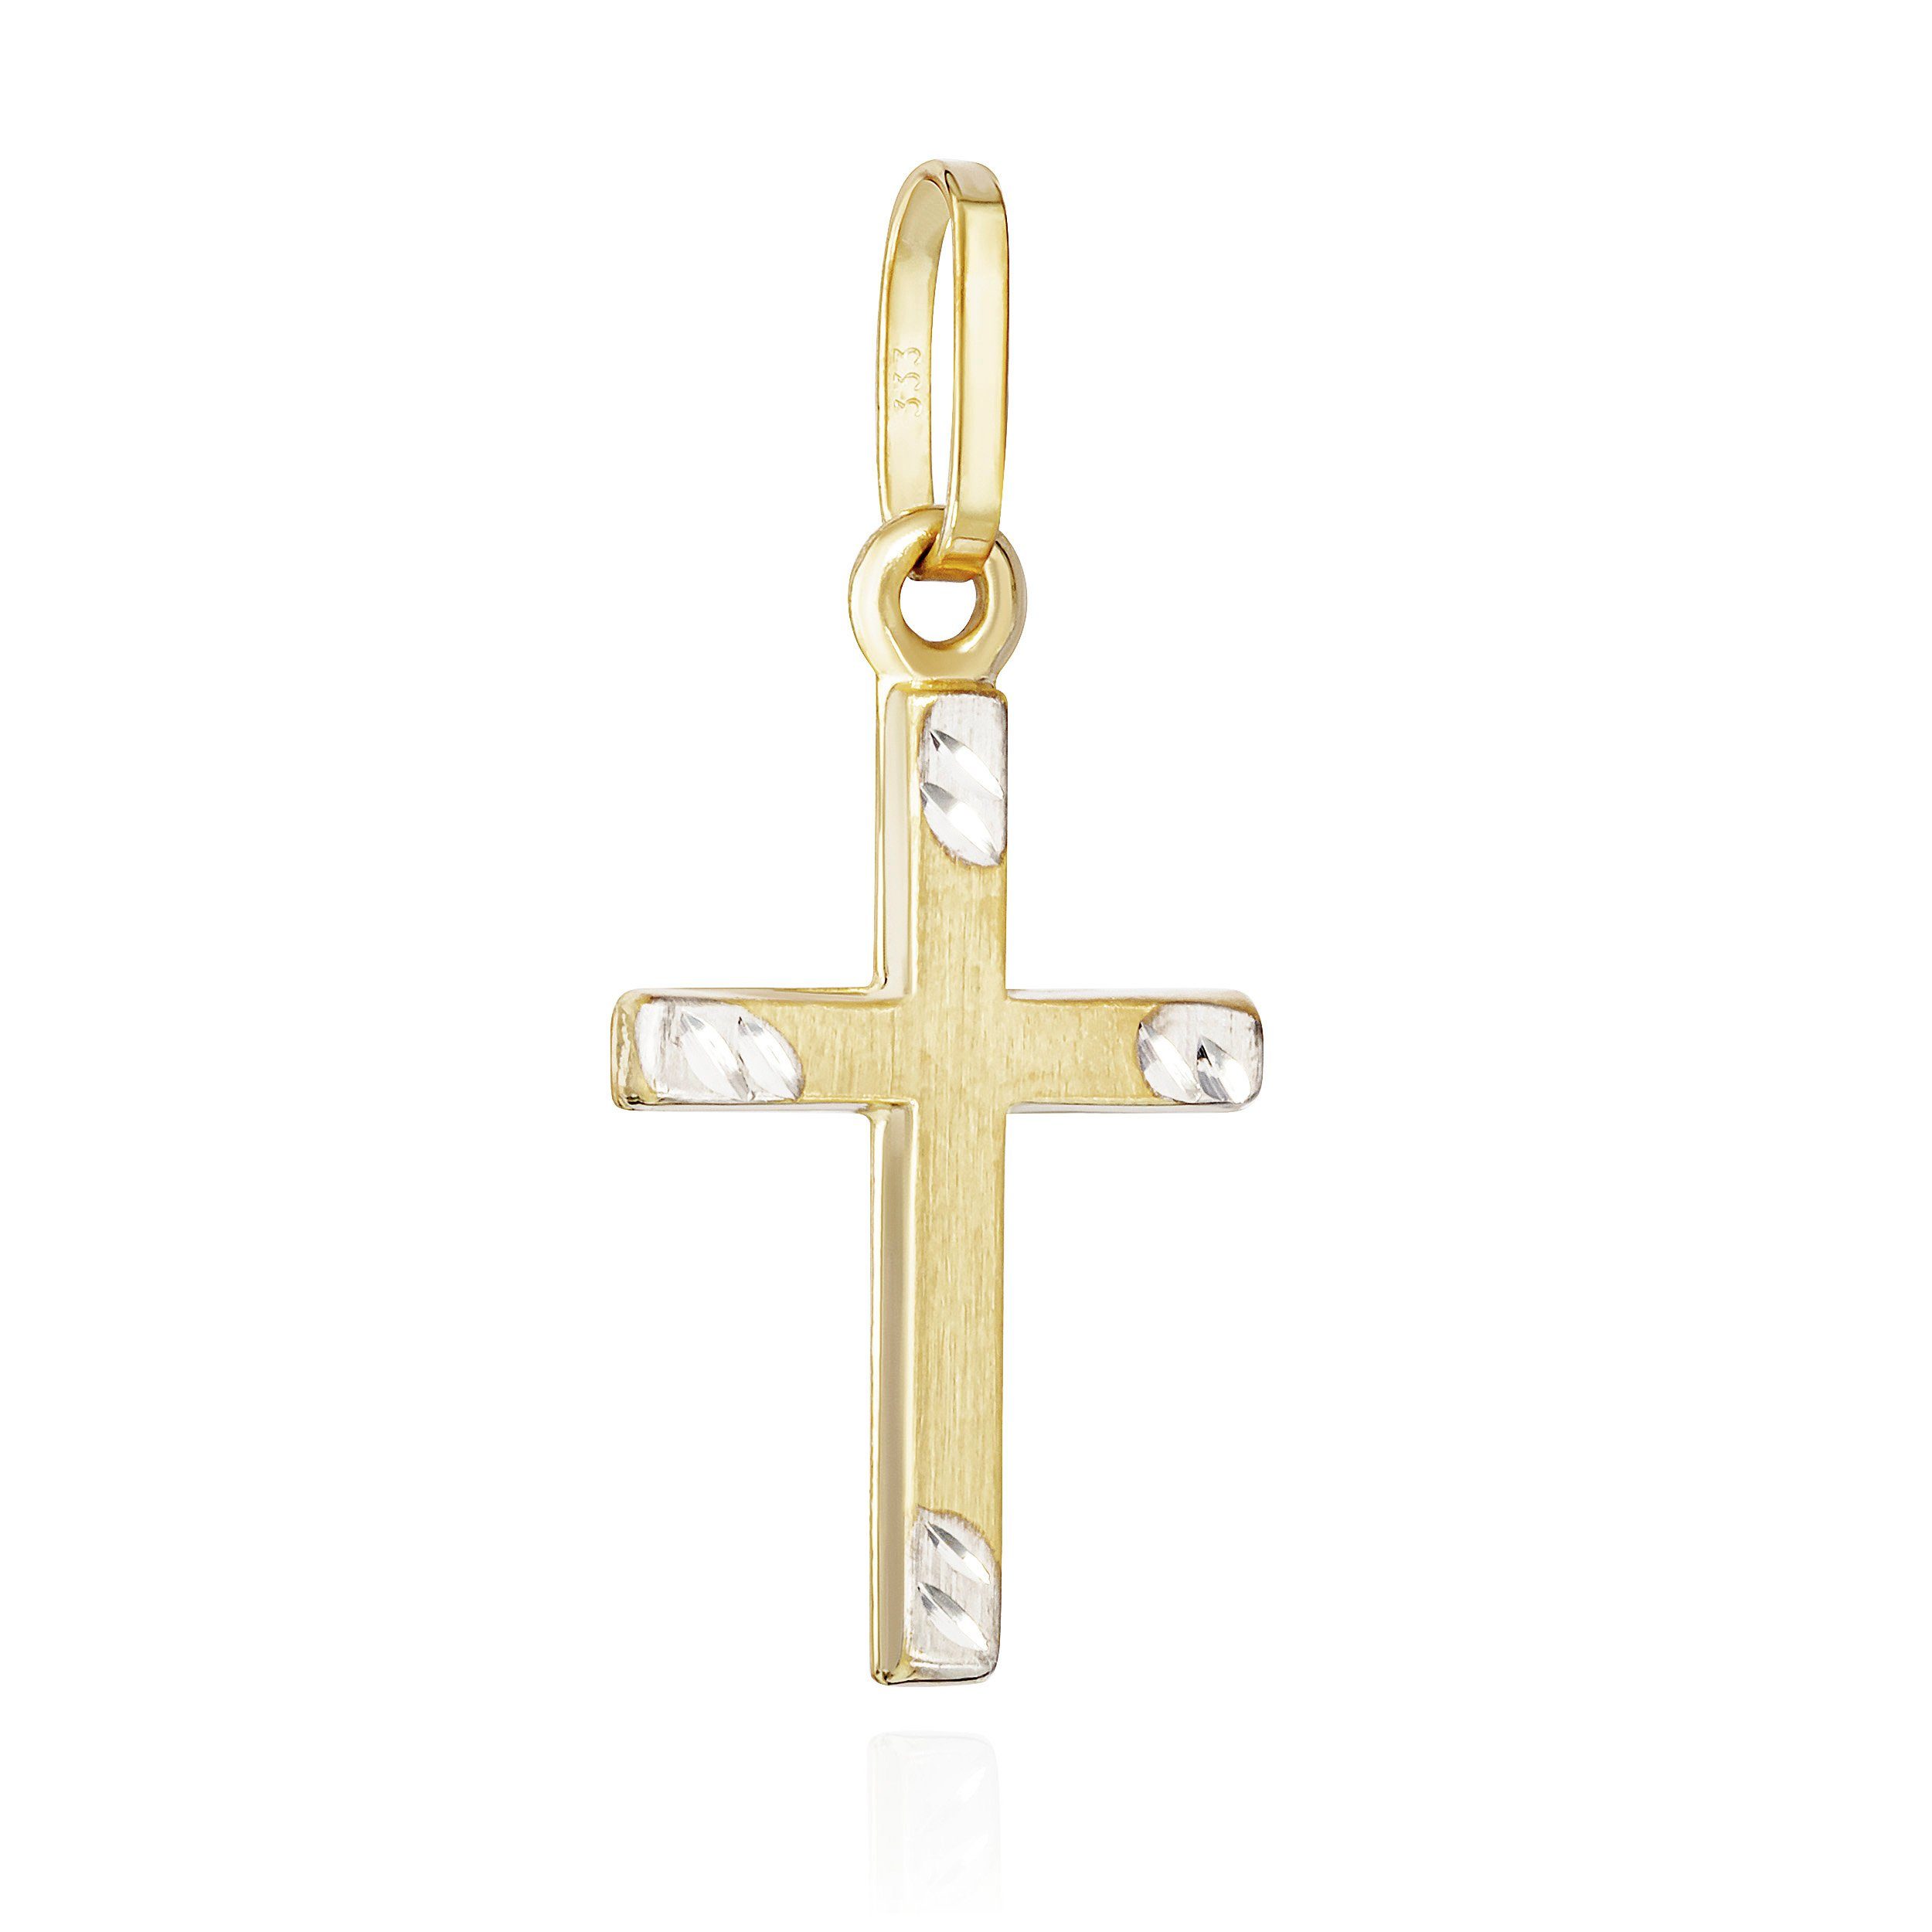 NKlaus Kettenanhänger Kettenanhäger Kreuz 333 Gelb Gold 8 Karat matt diamantiert 17x10mm Kru | Kettenanhänger